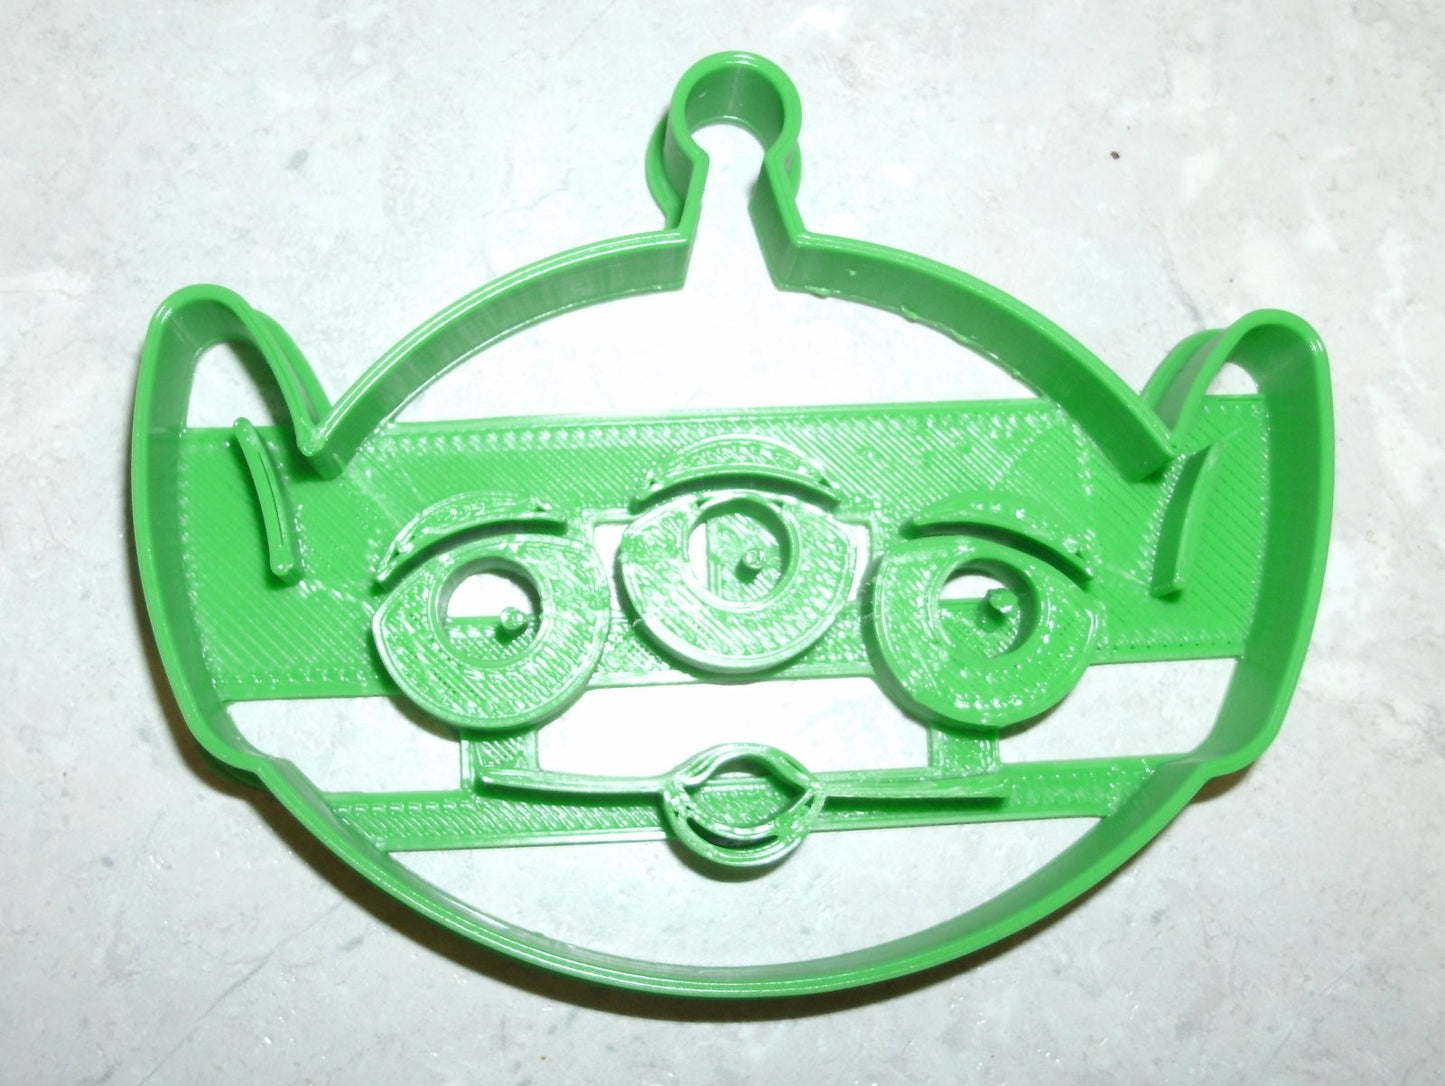 6x Little Green Man Fondant Cutter Cupcake Topper Size 1.75" USA FD724